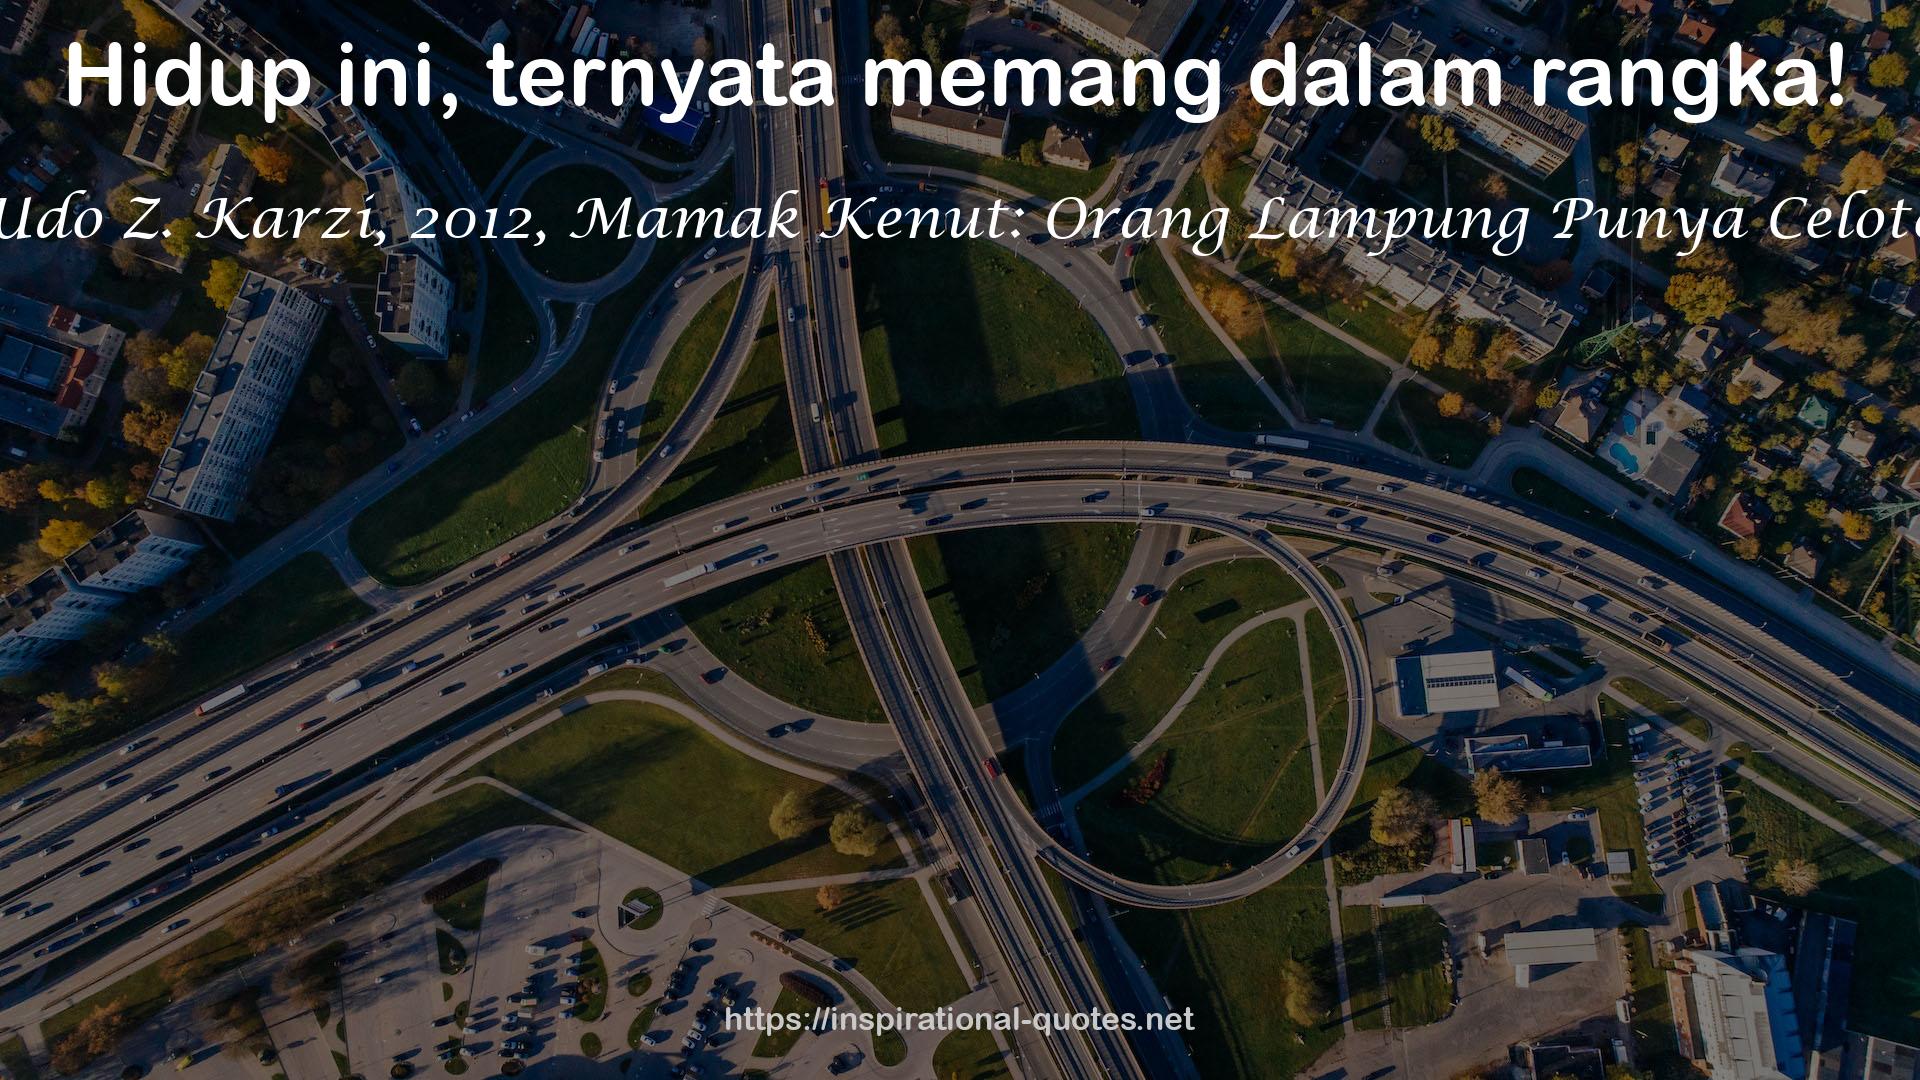 Udo Z. Karzi, 2012, Mamak Kenut: Orang Lampung Punya Celoteh QUOTES